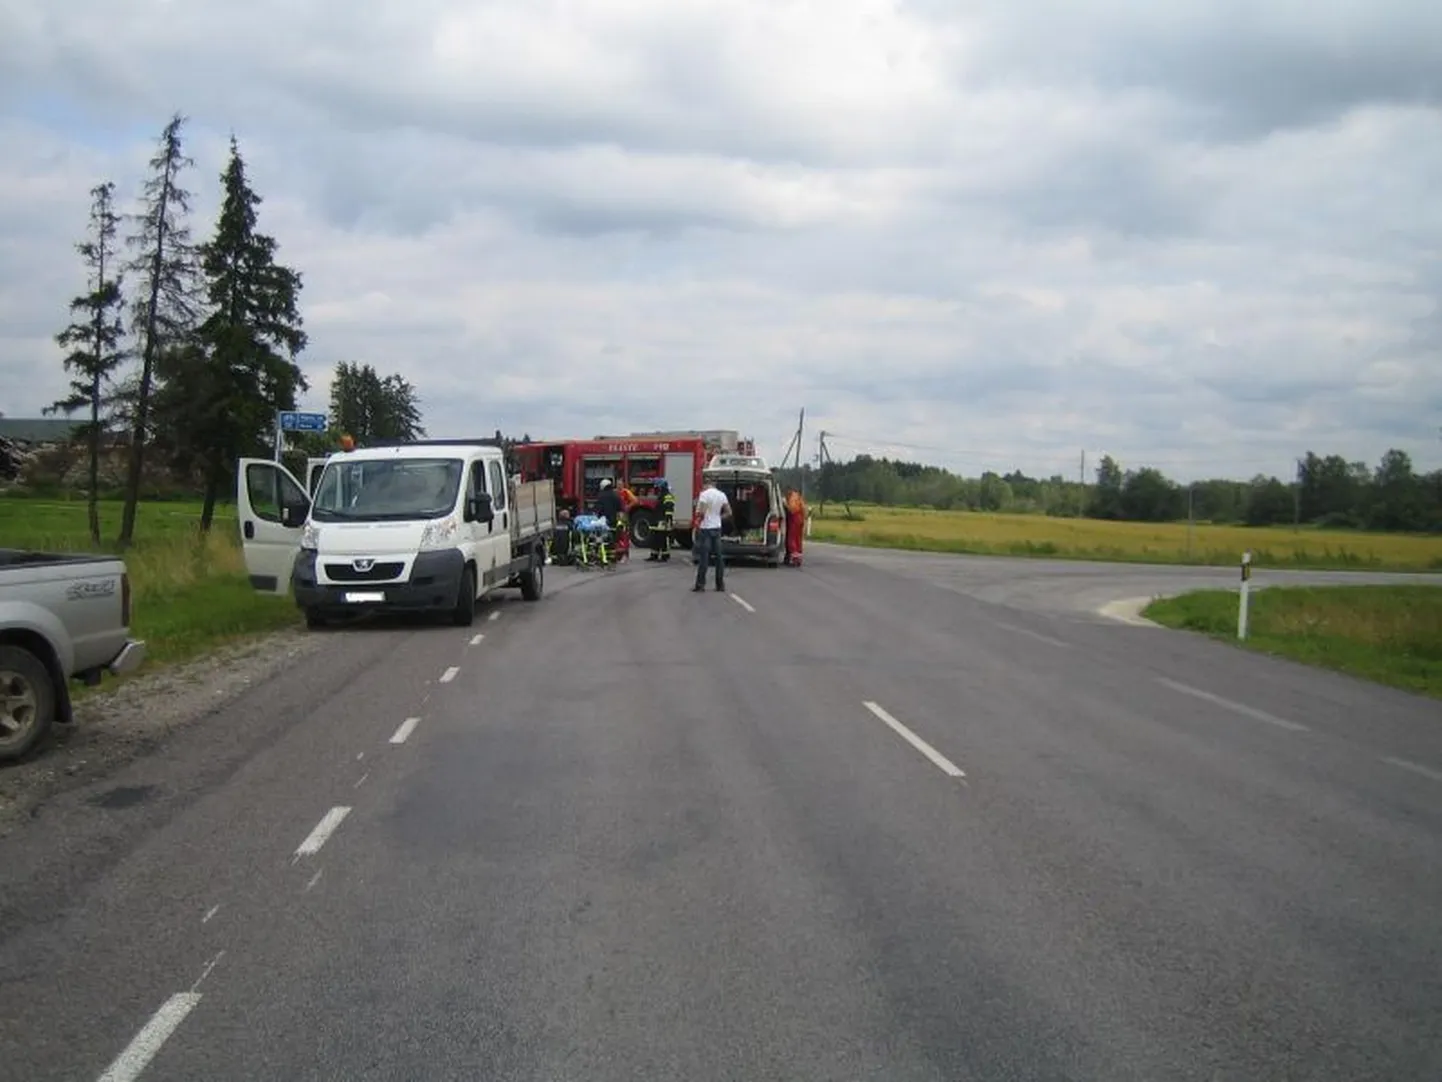 Liiklusõnnetus Järvamaal Paide vallas Pärnu-Rakvere-Sõmeru mnt 99. kilomeetril